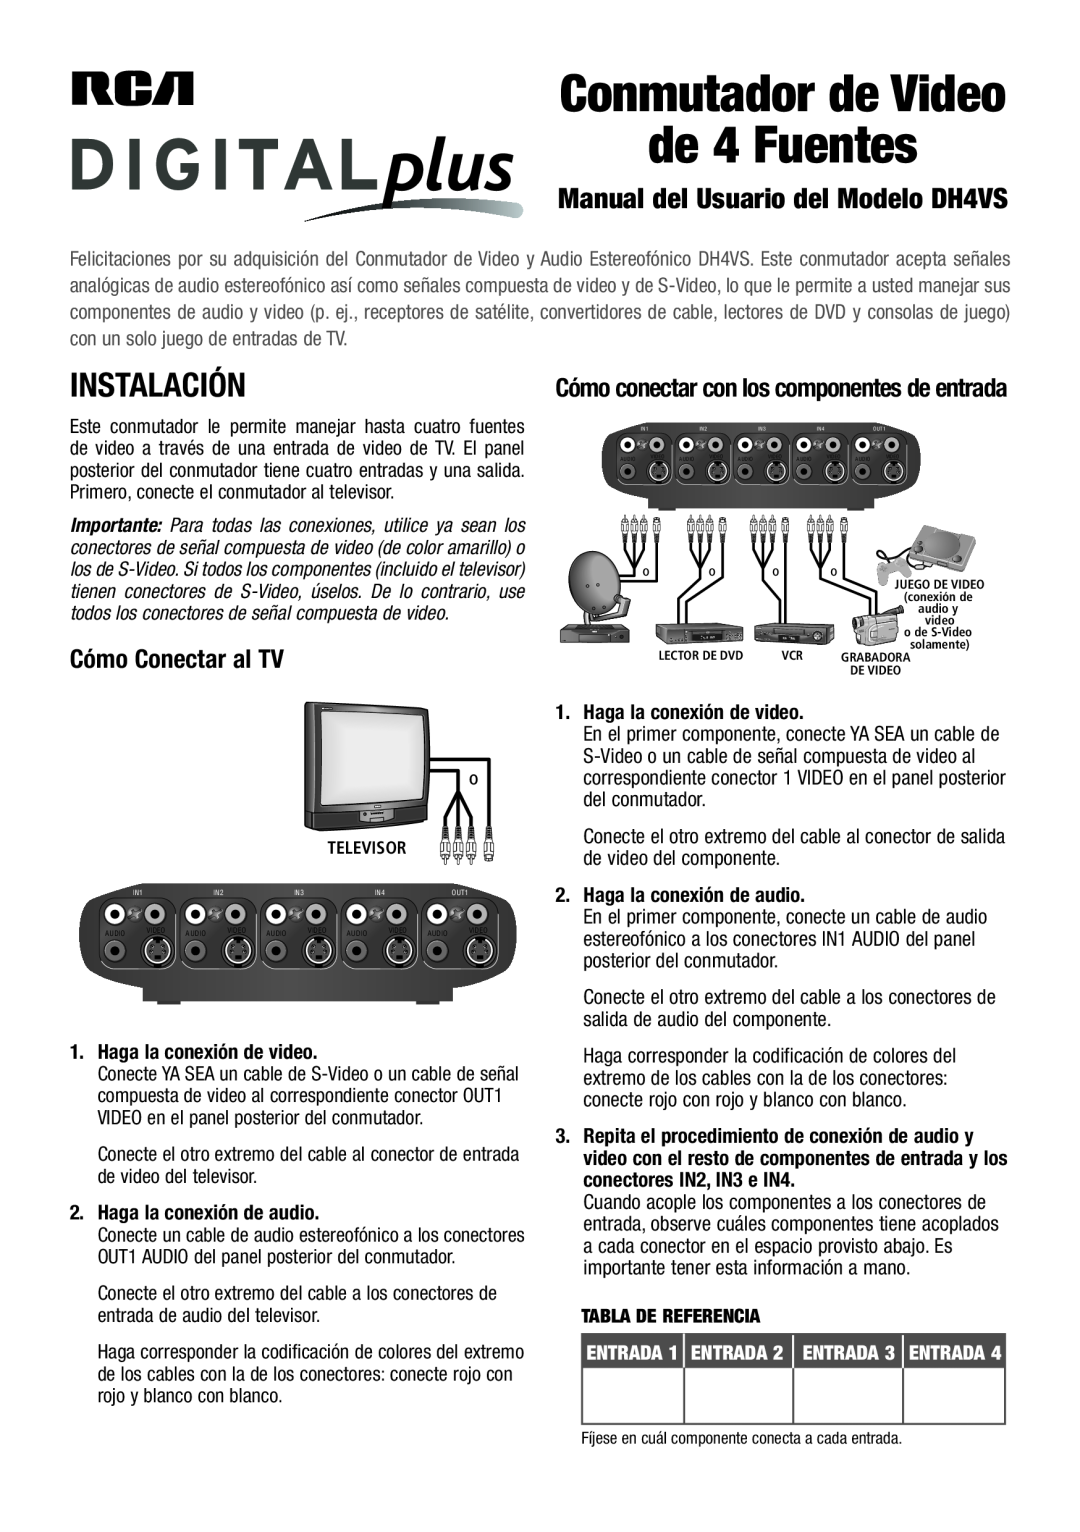 RCA DH4VS user manual de 4 Fuentes, Instalación, Cómo Conectar al TV, Cómo conectar con los componentes de entrada 